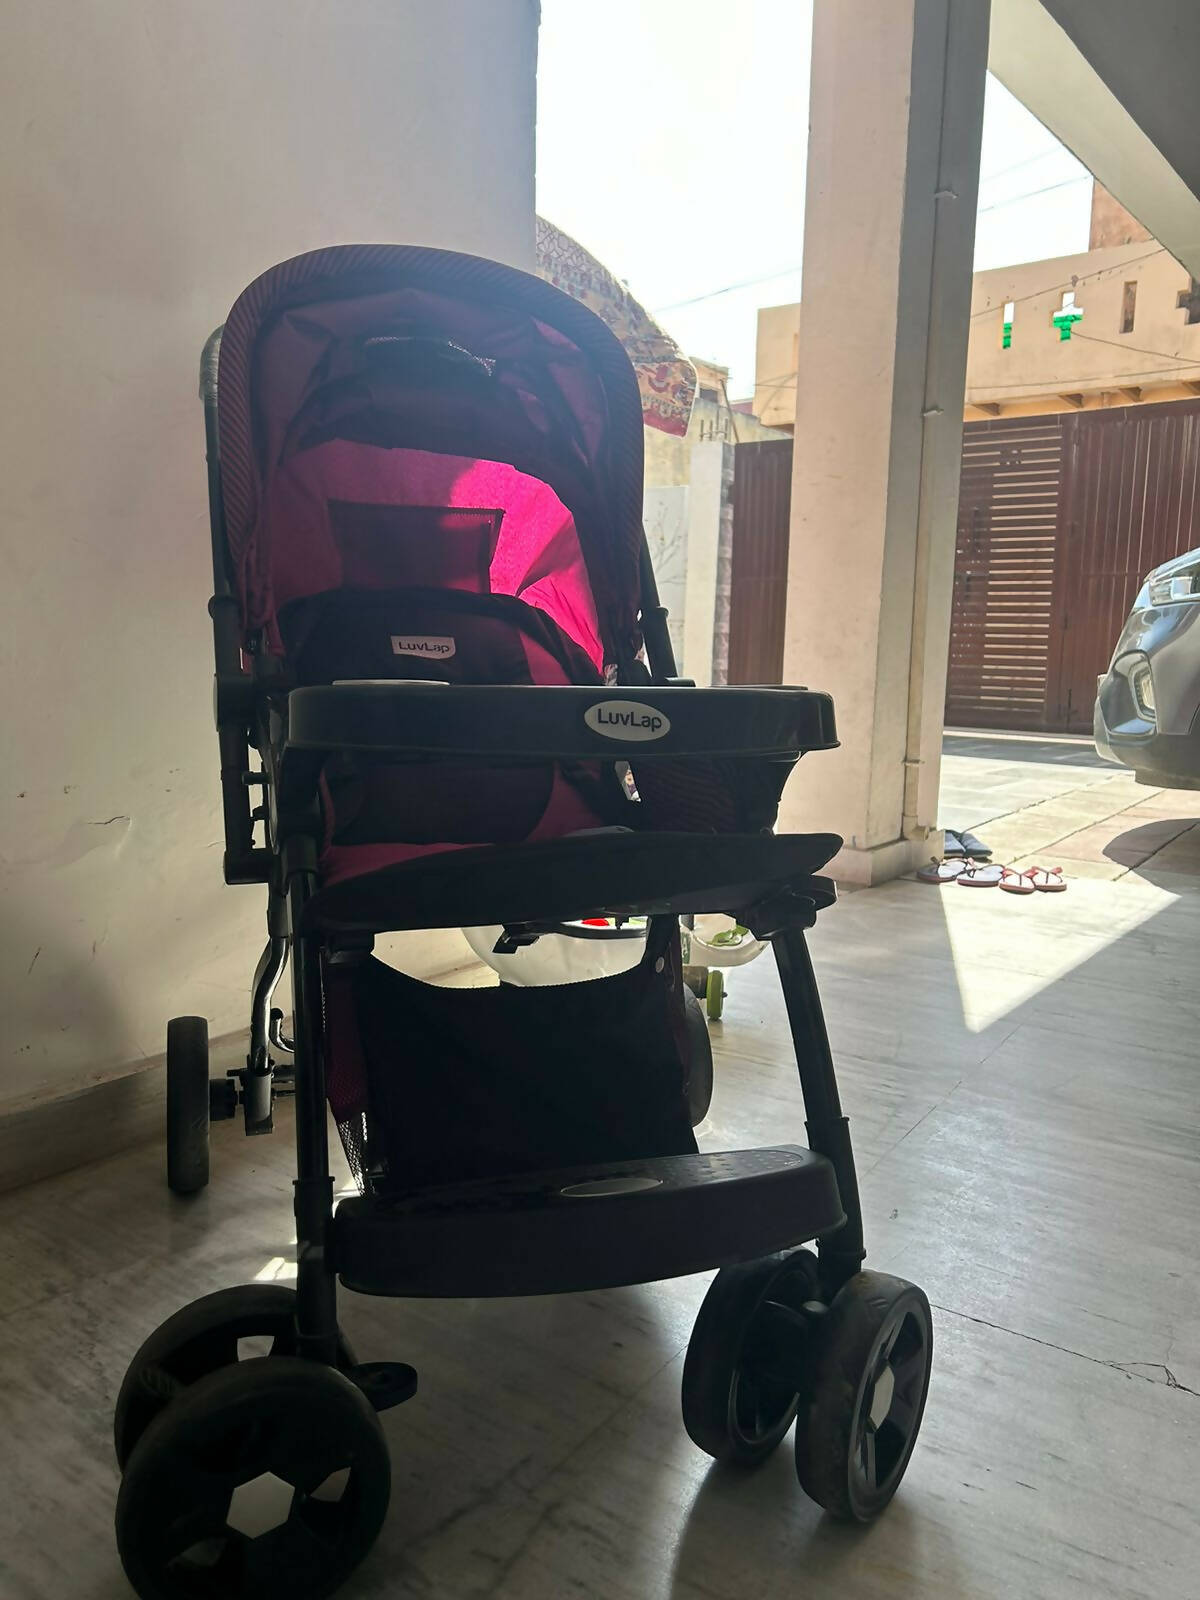 LUVLAP Pram/Stroller For Baby